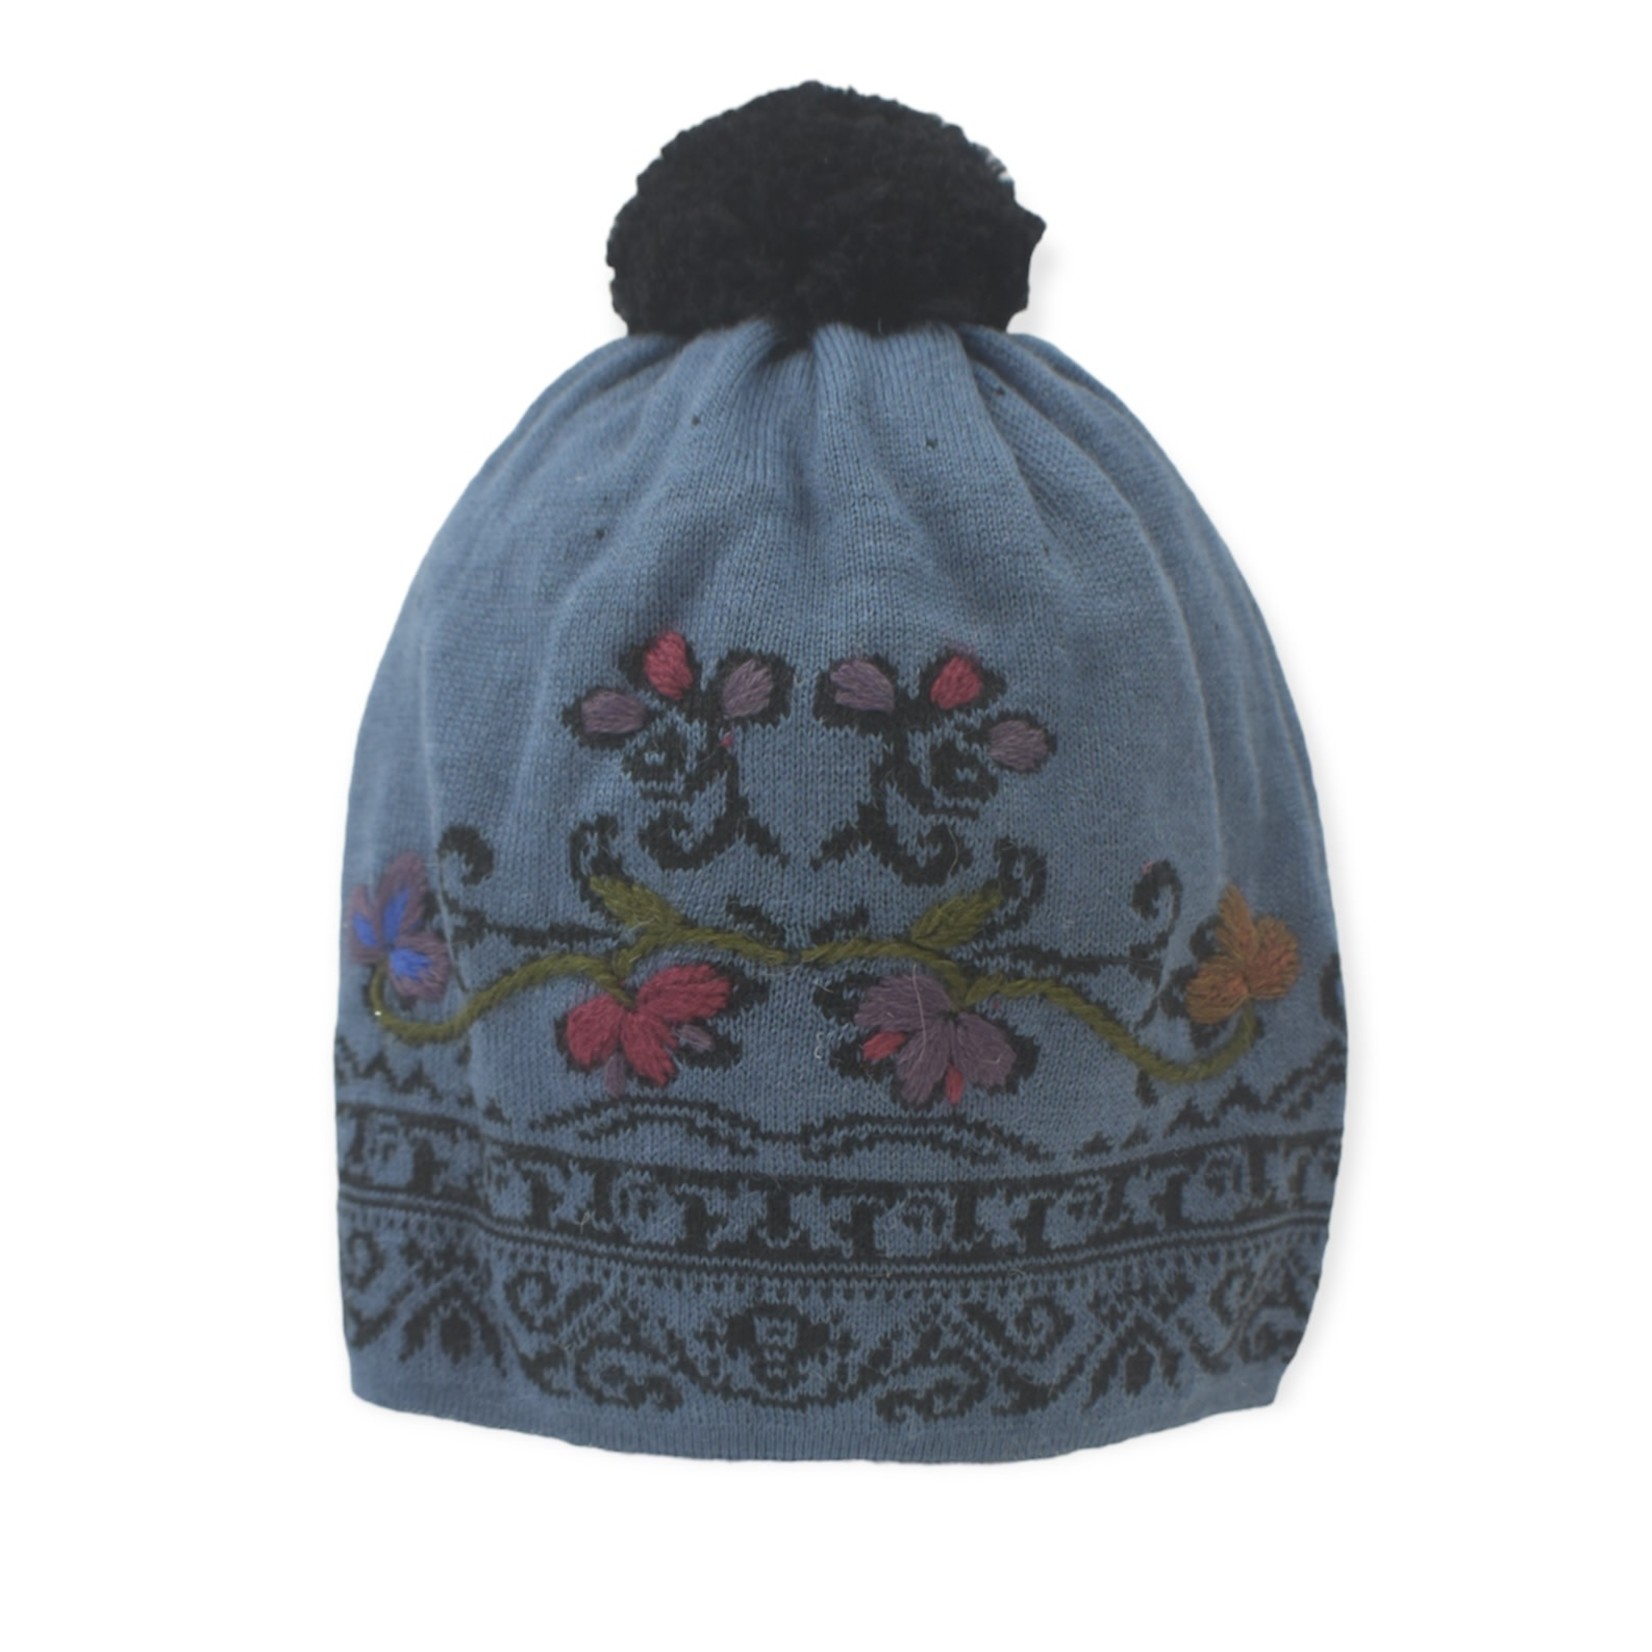 Embroidery Hat with Pom-Pom